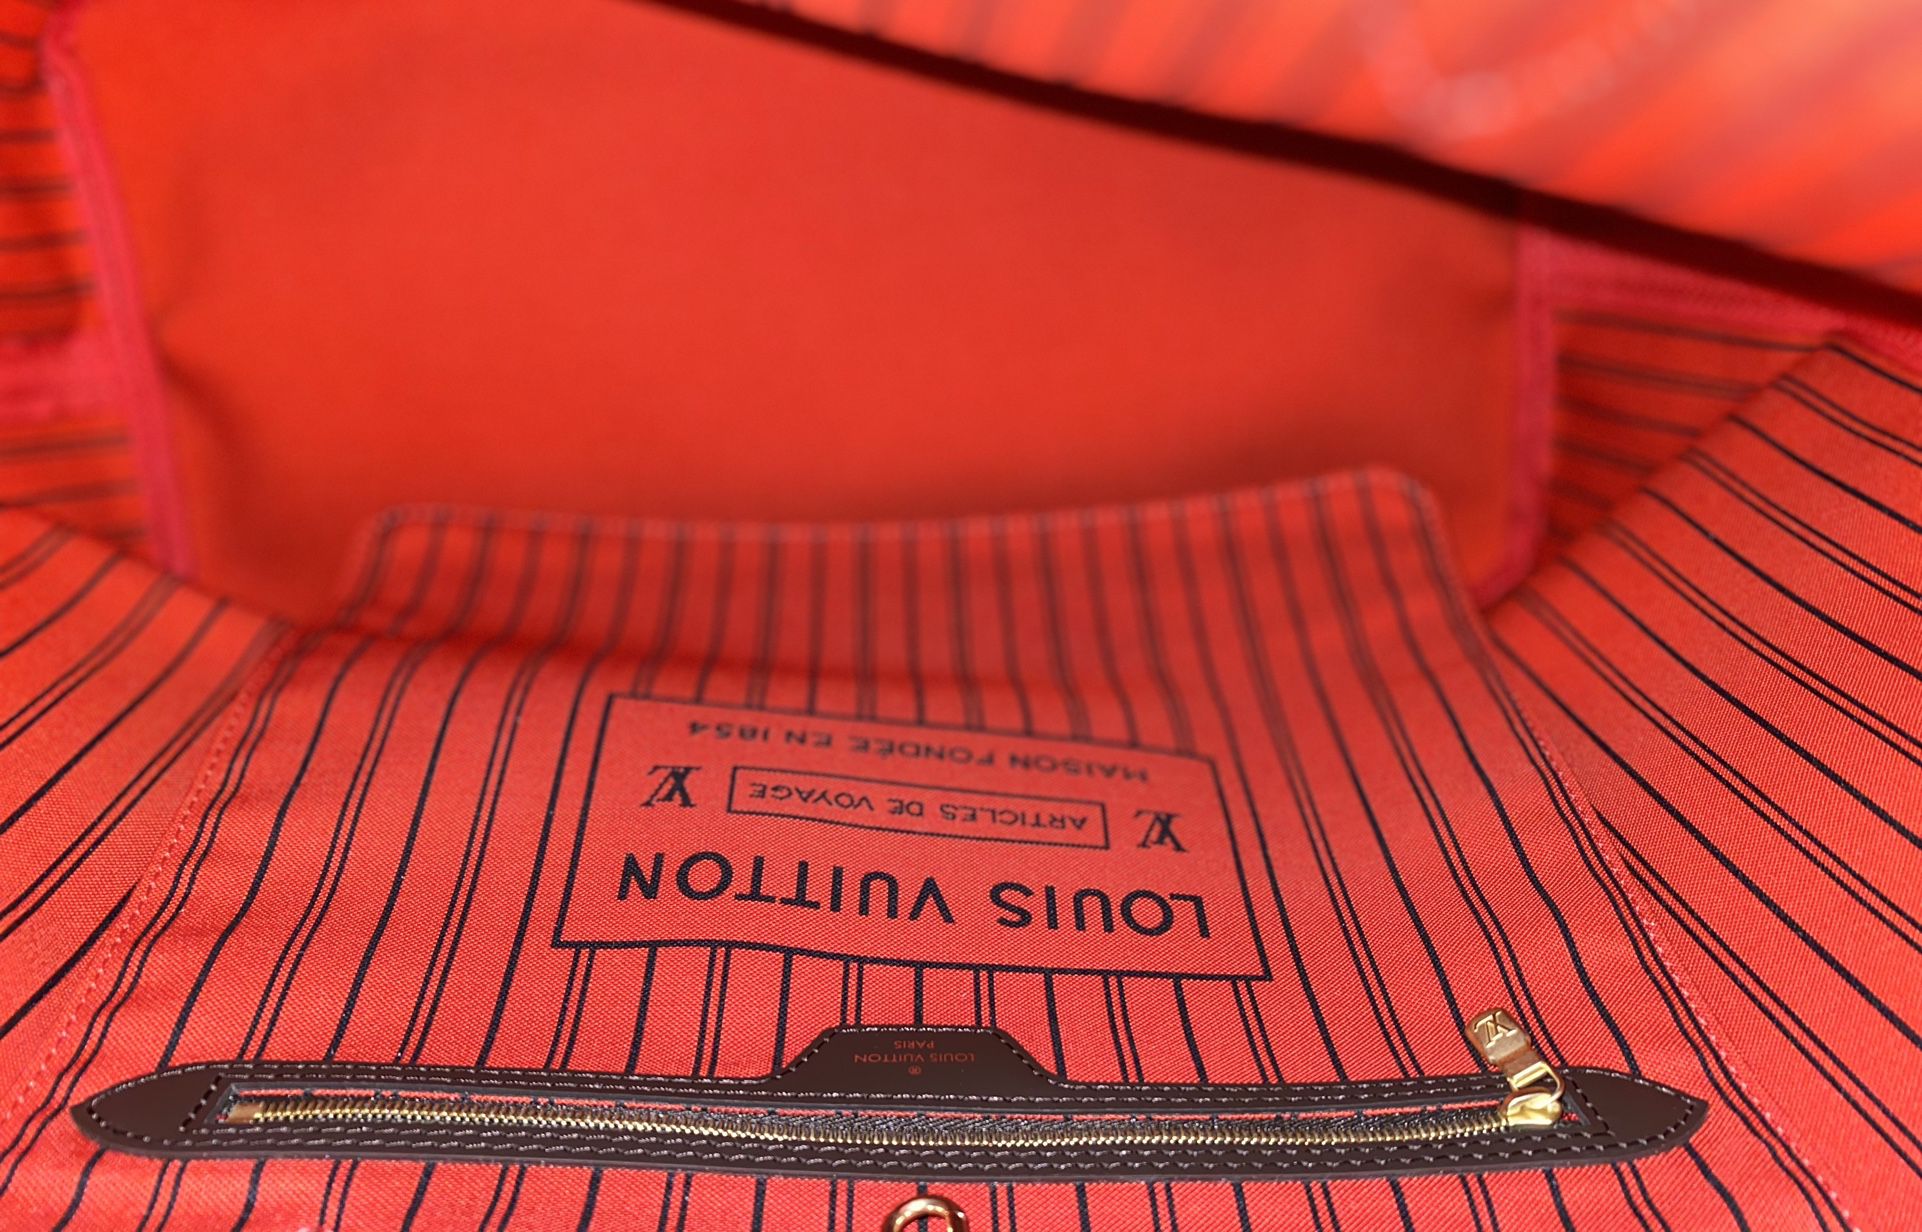 Louis Vuitton Graceful MM for Sale in Glendale, AZ - OfferUp